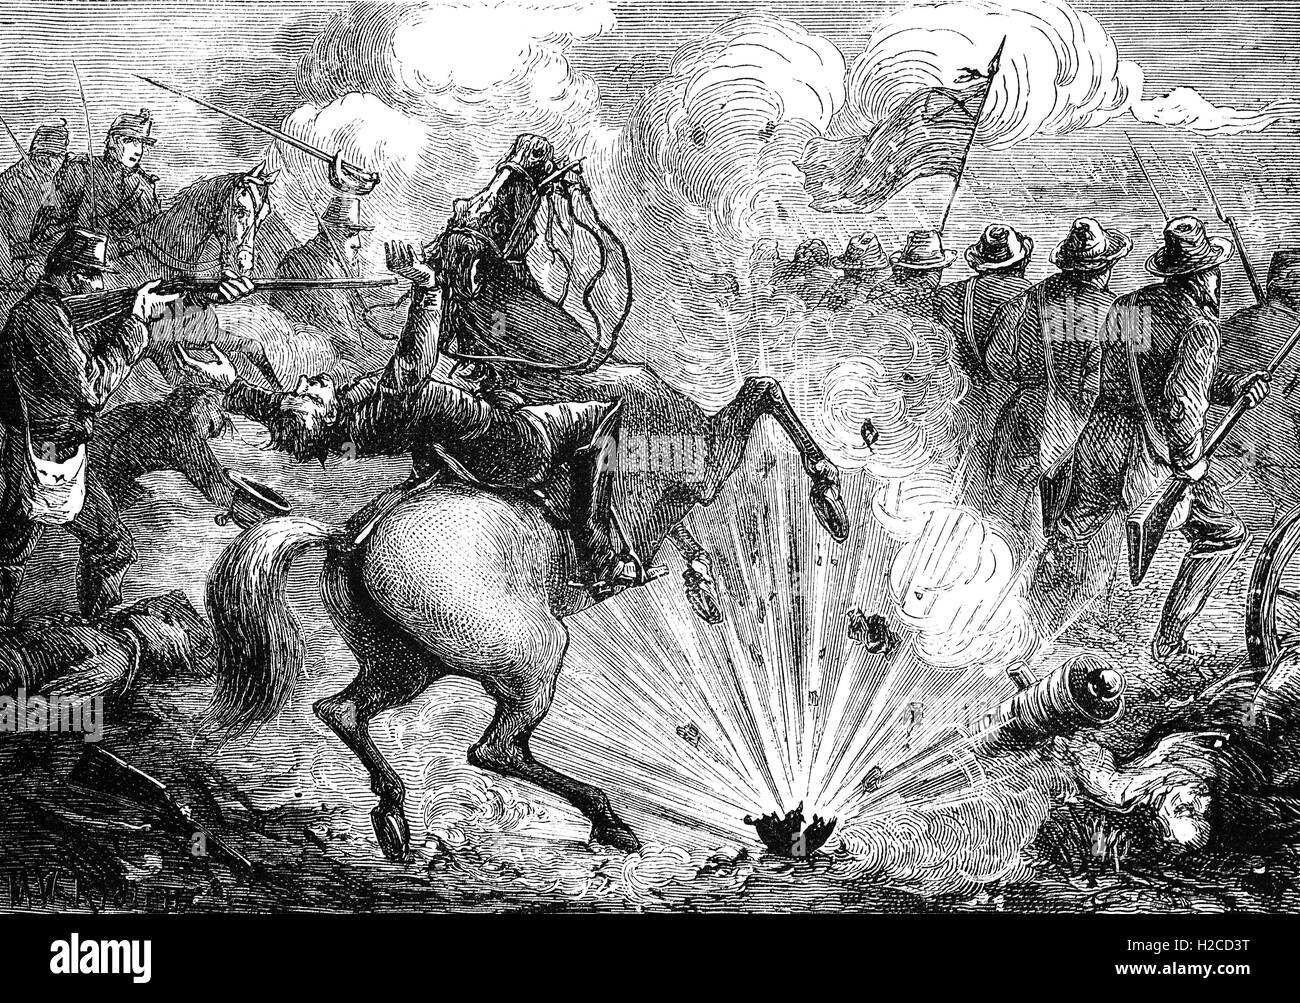 La batalla de Shiloh, también conocida como la Batalla de Pittsburg Landing, fue la segunda gran batalla de la Guerra Civil Americana (1862). La batalla de abril 6-7, 1862, en el suroeste de Tennessee, terminó con la retirada de las tropas confederadas, pero no fue una victoria de la Unión. Foto de stock